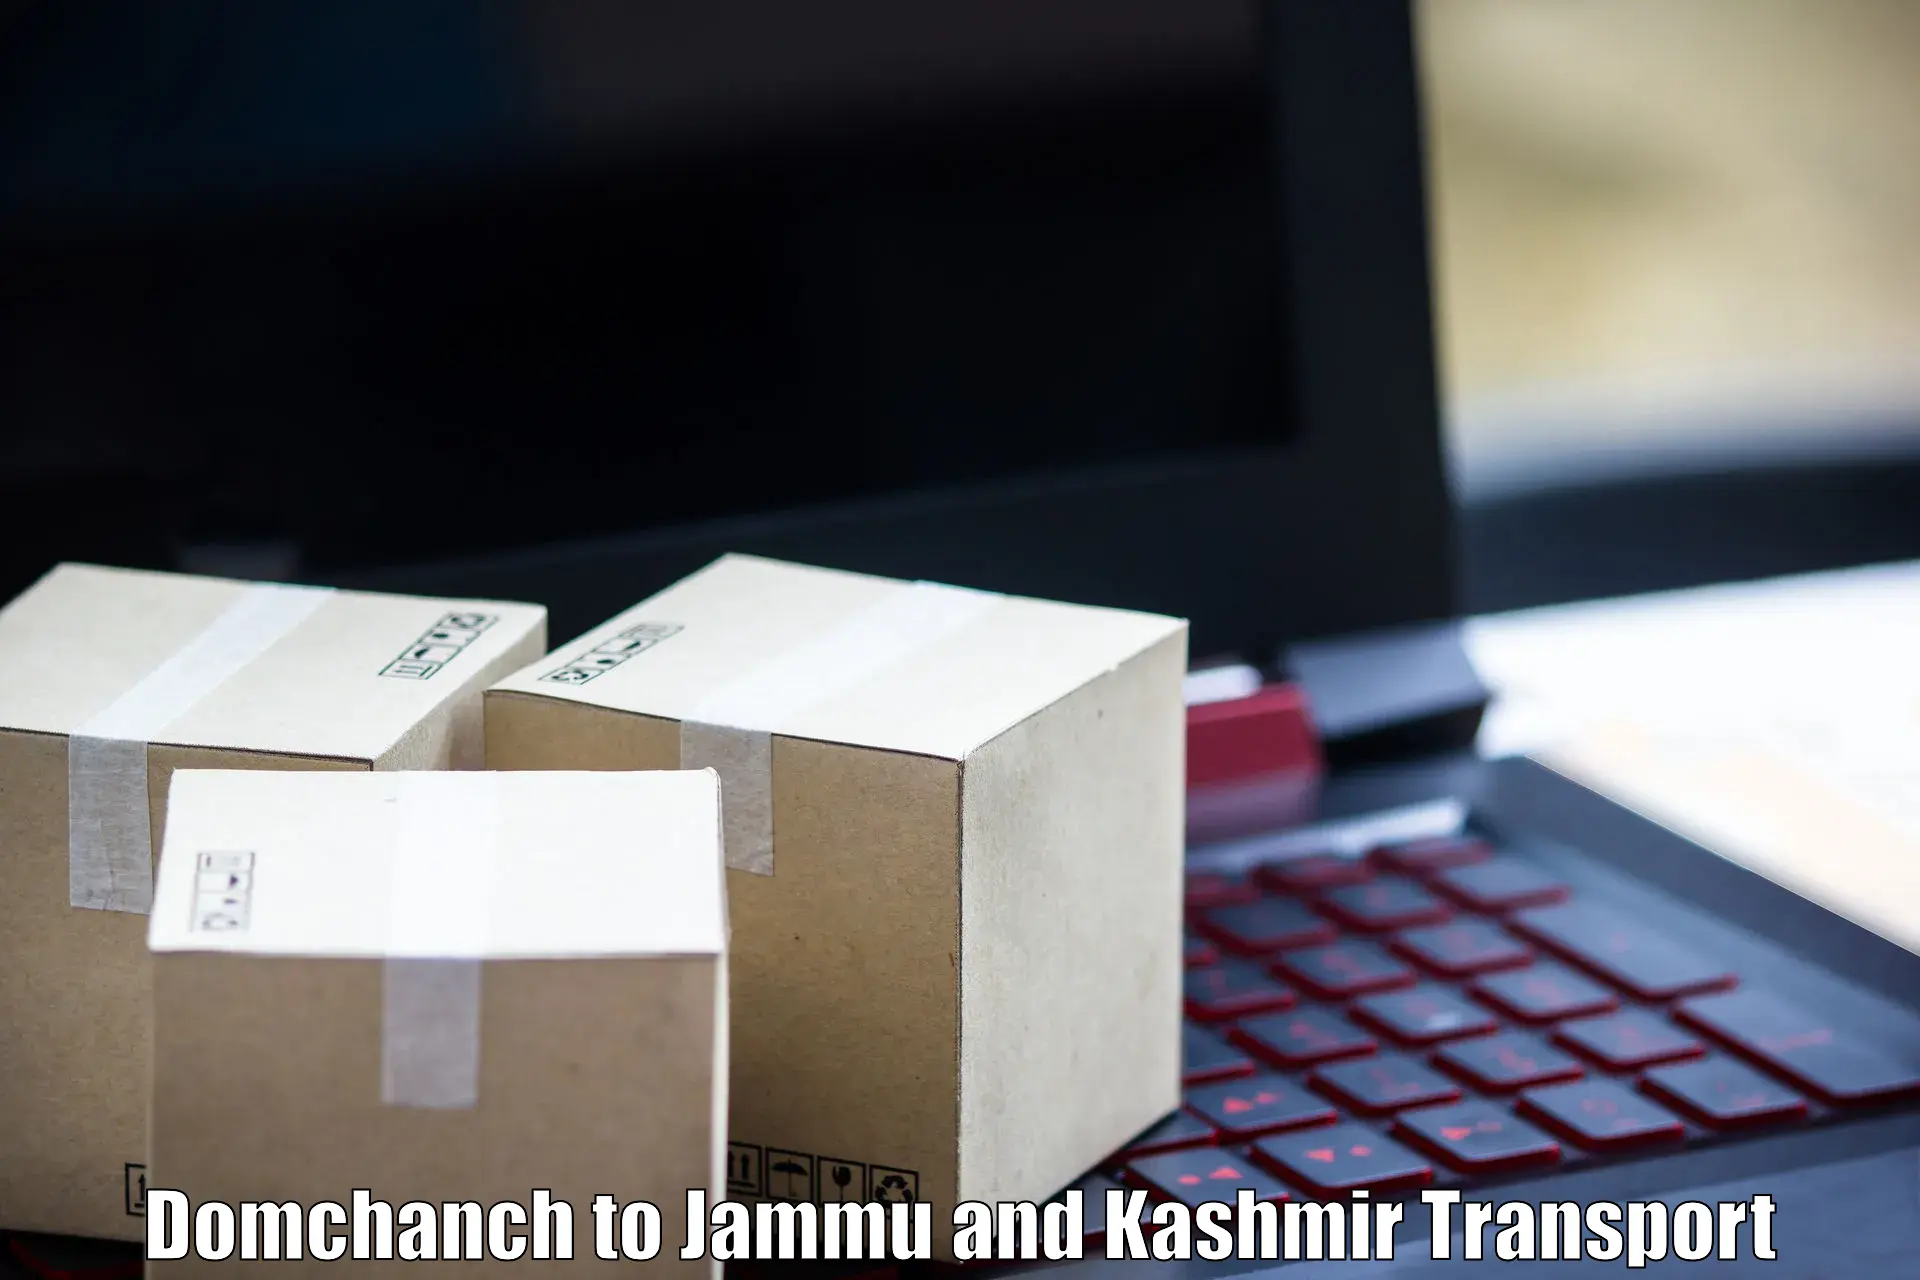 Transport services Domchanch to IIT Jammu